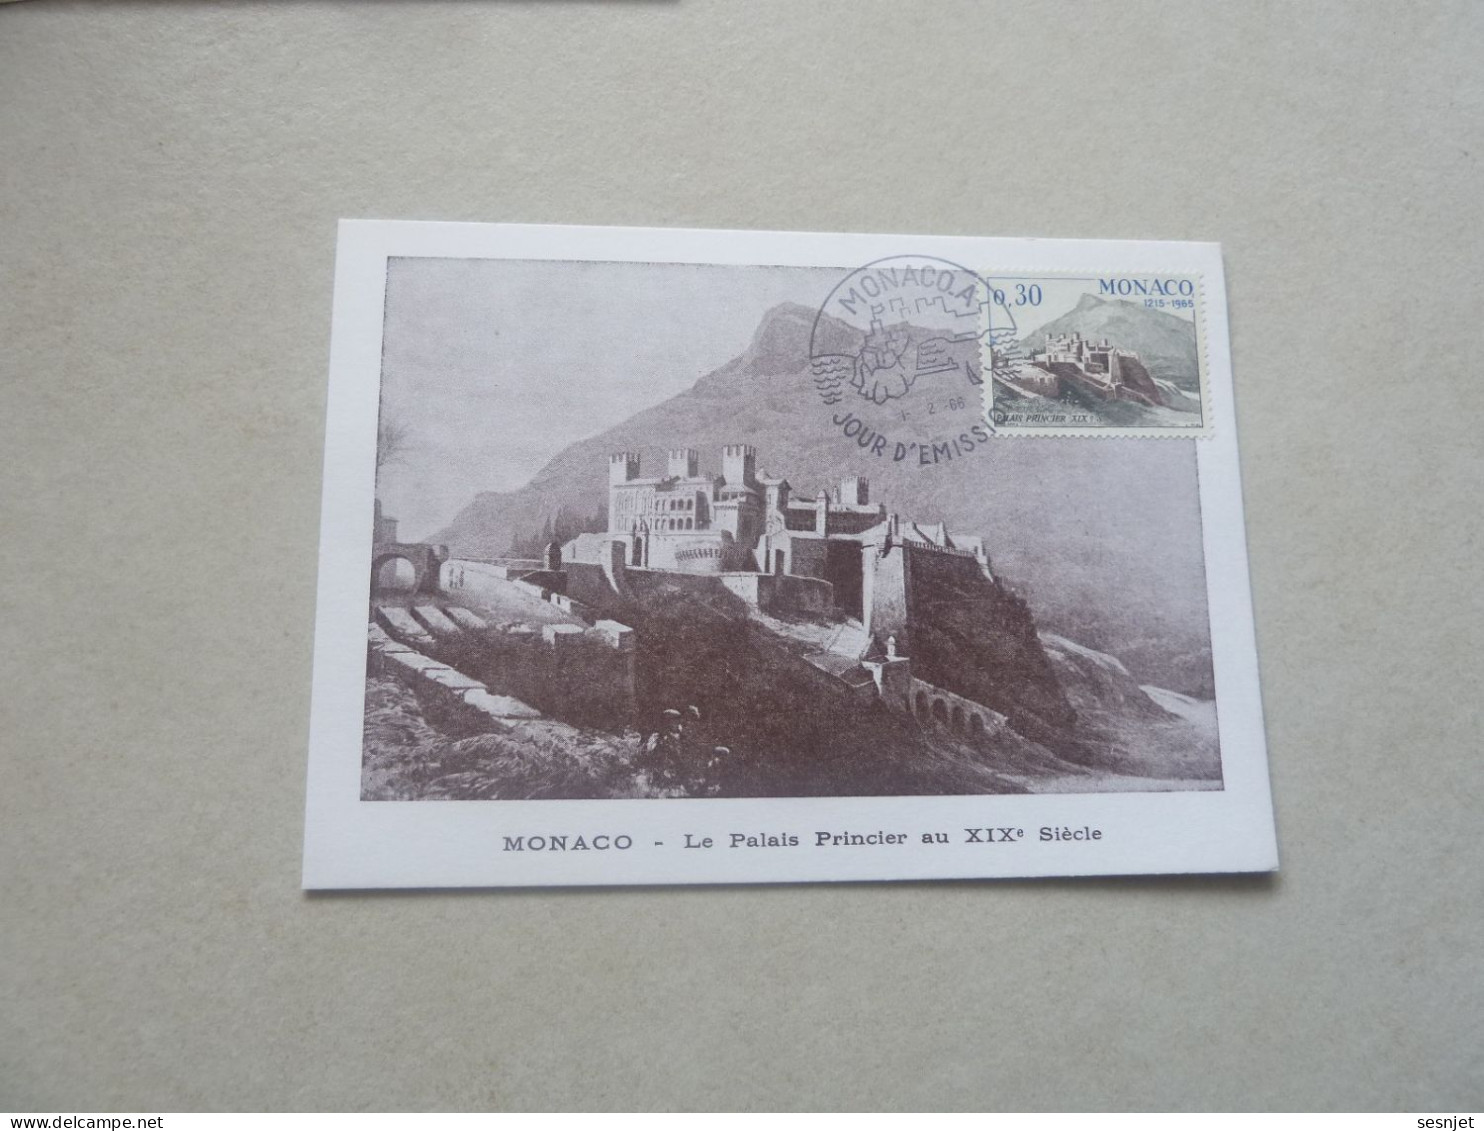 Monaco - Le Palais Au 19ème Siècle - 30c. - Yt 680 - Carte Premier Jour D'Emission - Année 1966 - - Maximum Cards